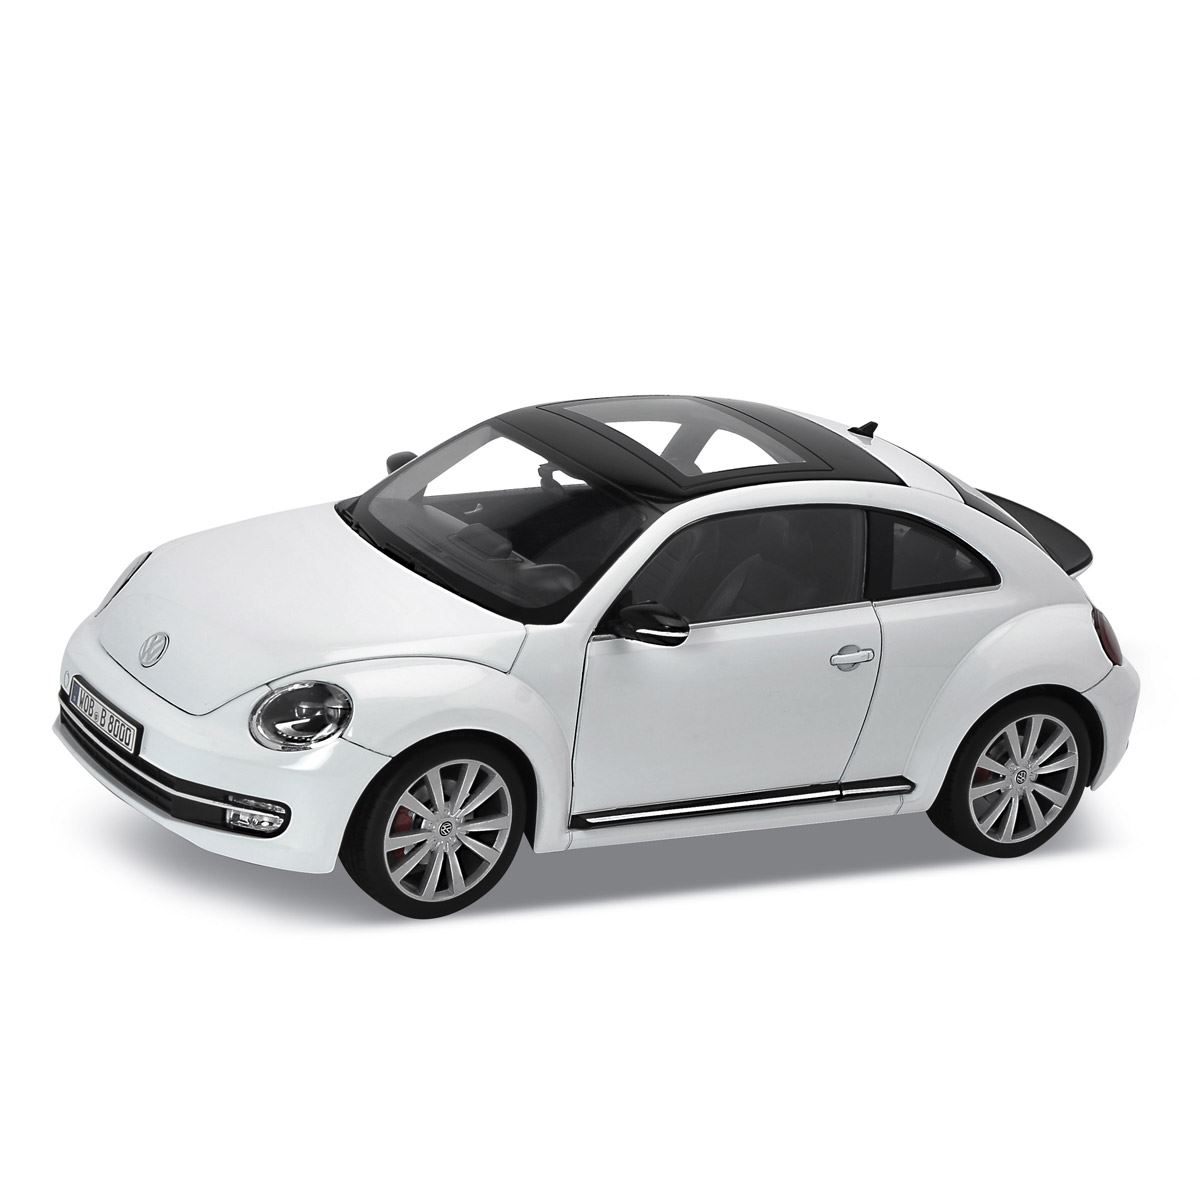 VW New Beetle 2012 esc. 1:18